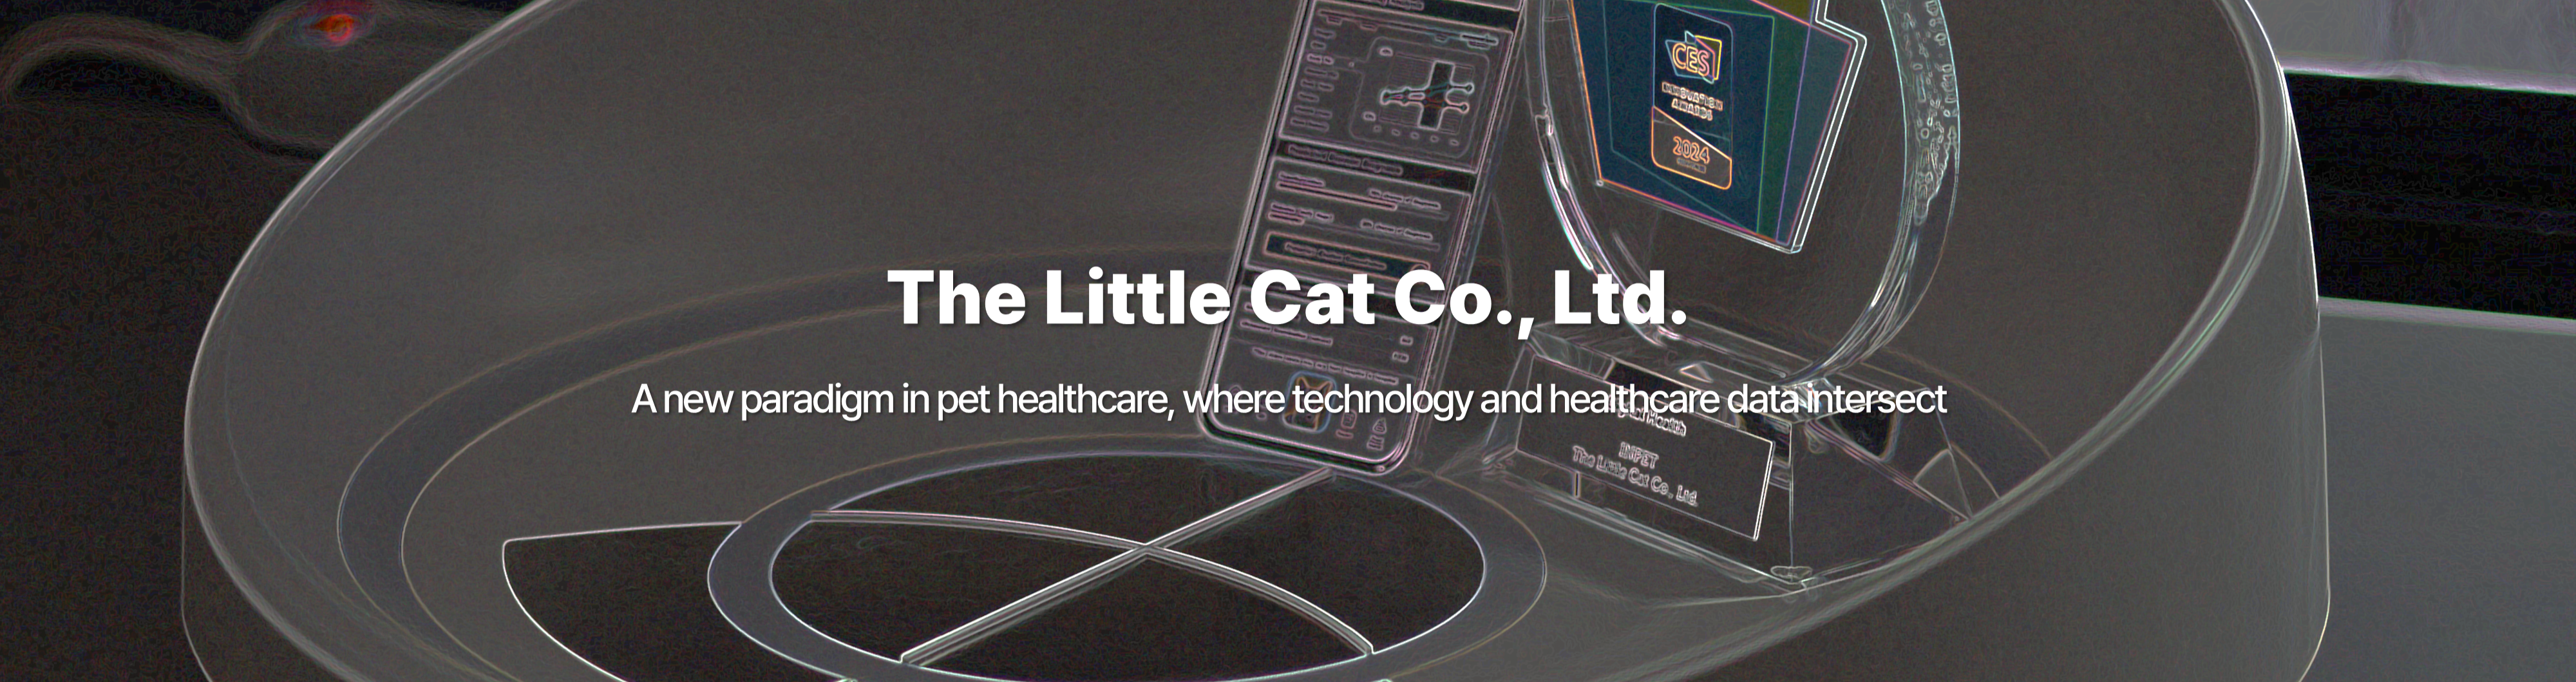 The Little Cat Co., Ltd.